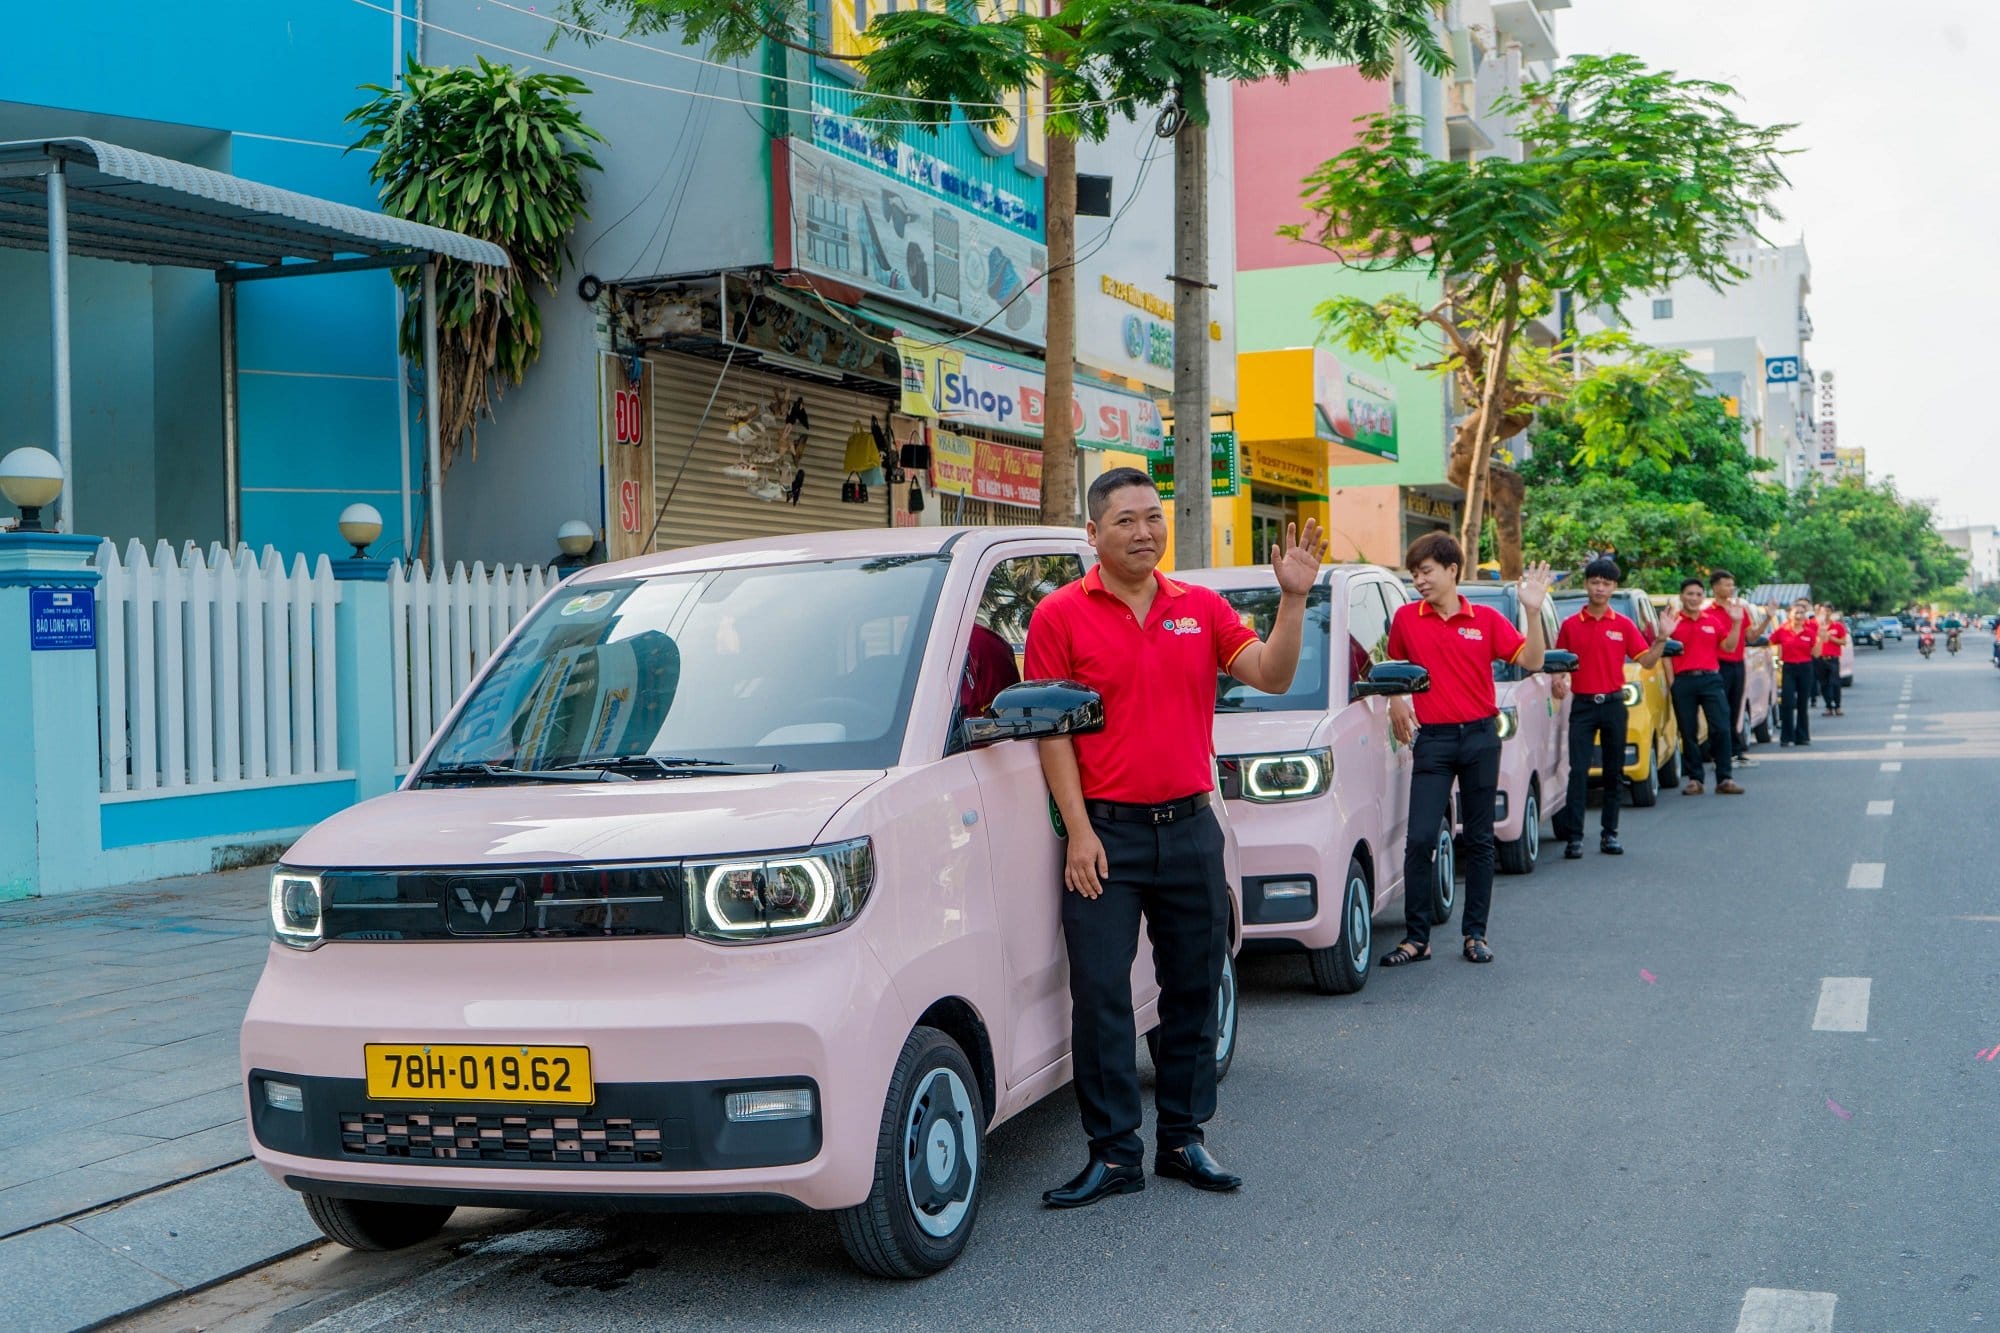 Taxi điện mini đầu tiên tại Việt Nam: Giá cước chỉ bằng 1 nửa Xanh SM của tỷ phú Phạm Nhật Vượng nhưng cộng đồng mạng vẫn lo ngại vì 2 yếu tố này - Ảnh 2.